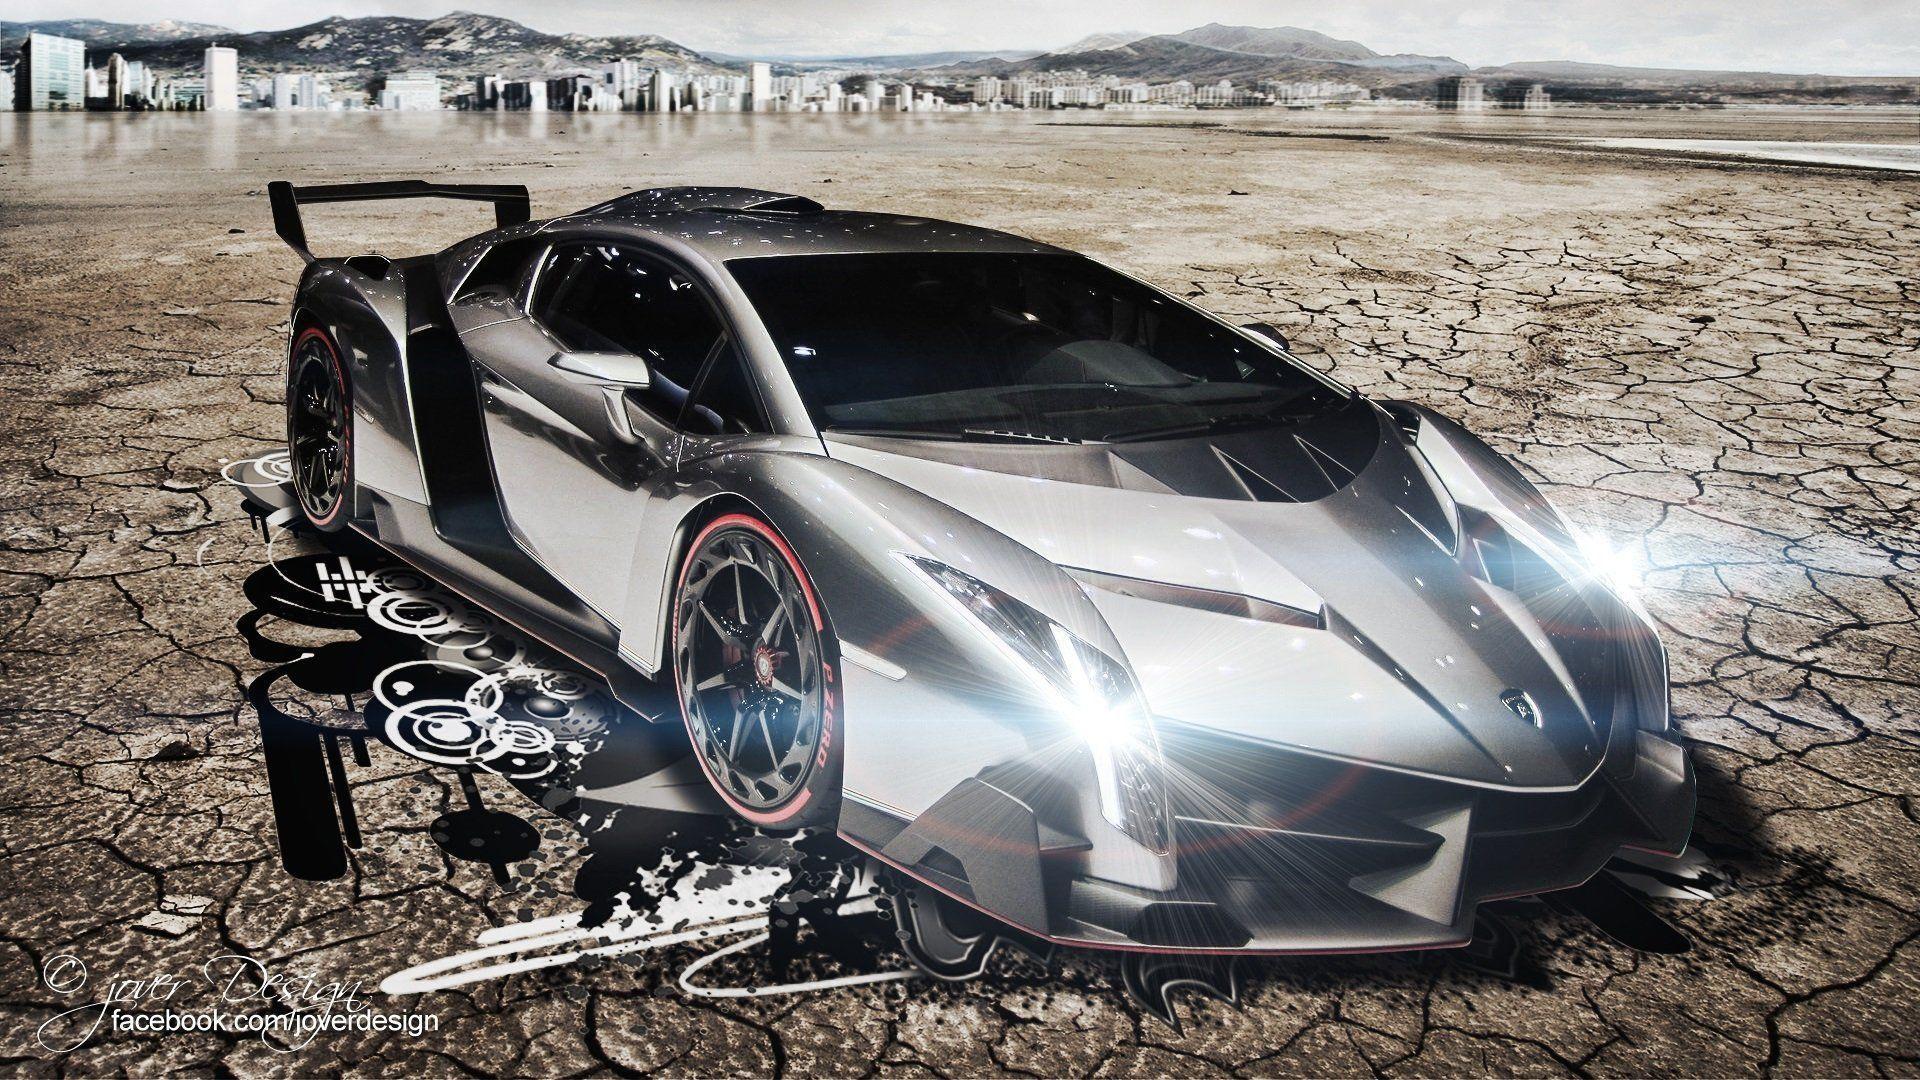 لامبورگینی Veneno (Lamborghini Veneno)